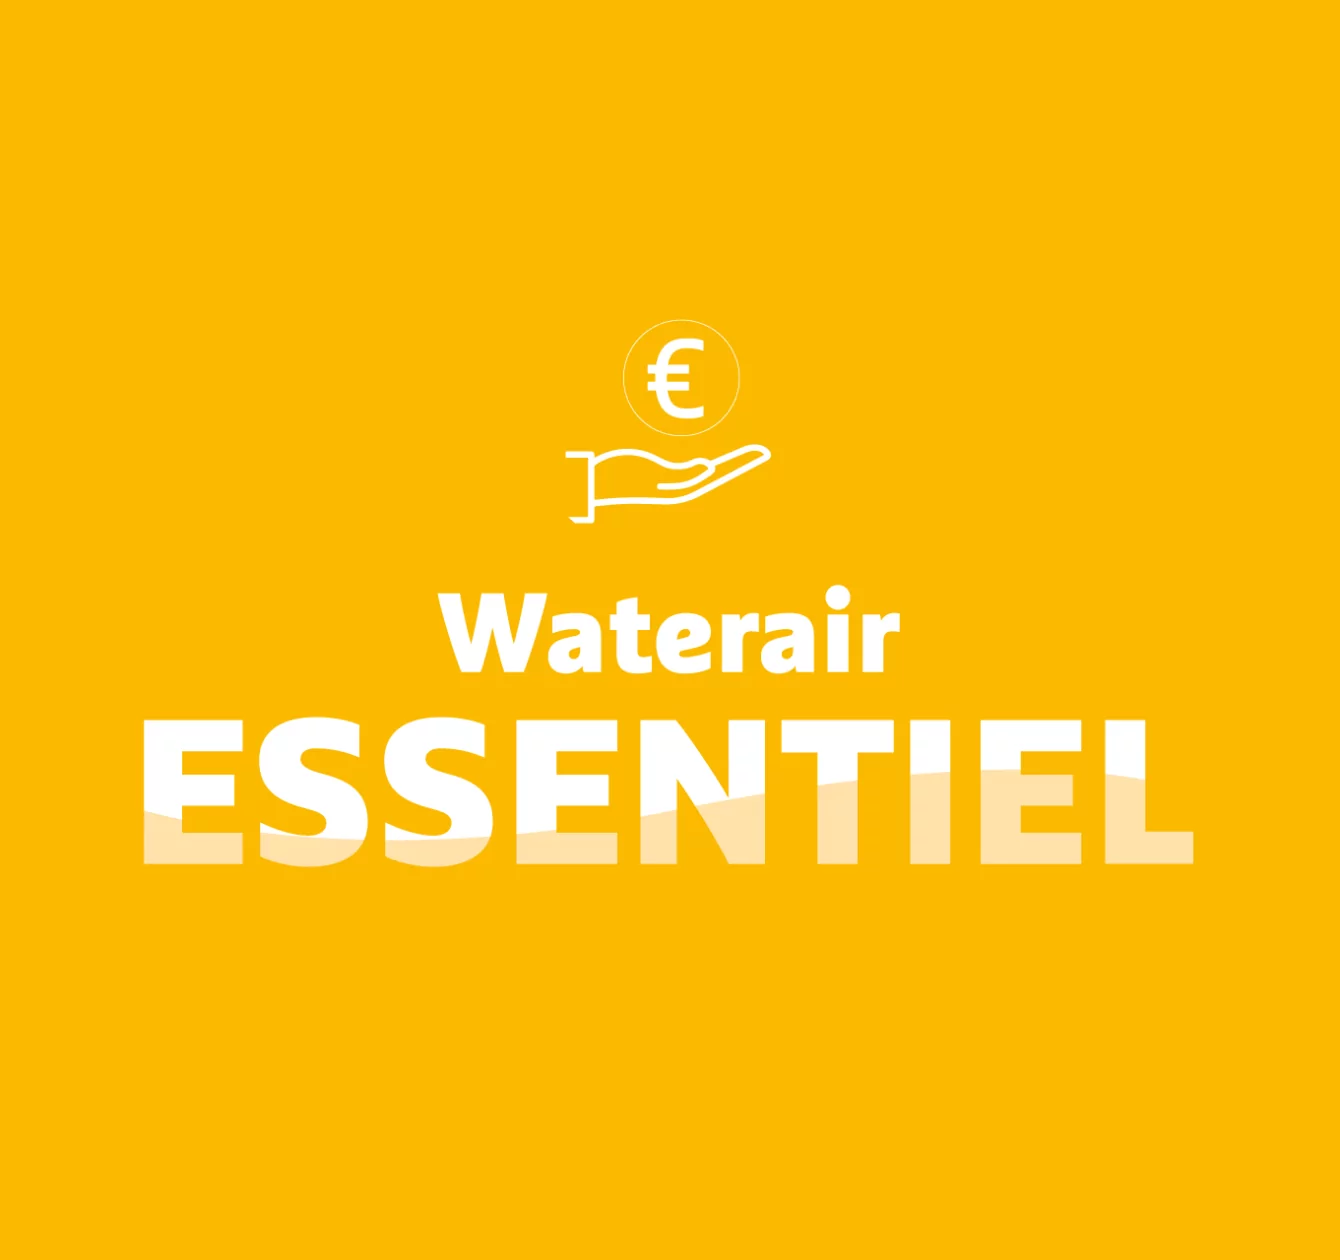 Waterair Essential: uw duurzame zwembad voor de juiste prijs